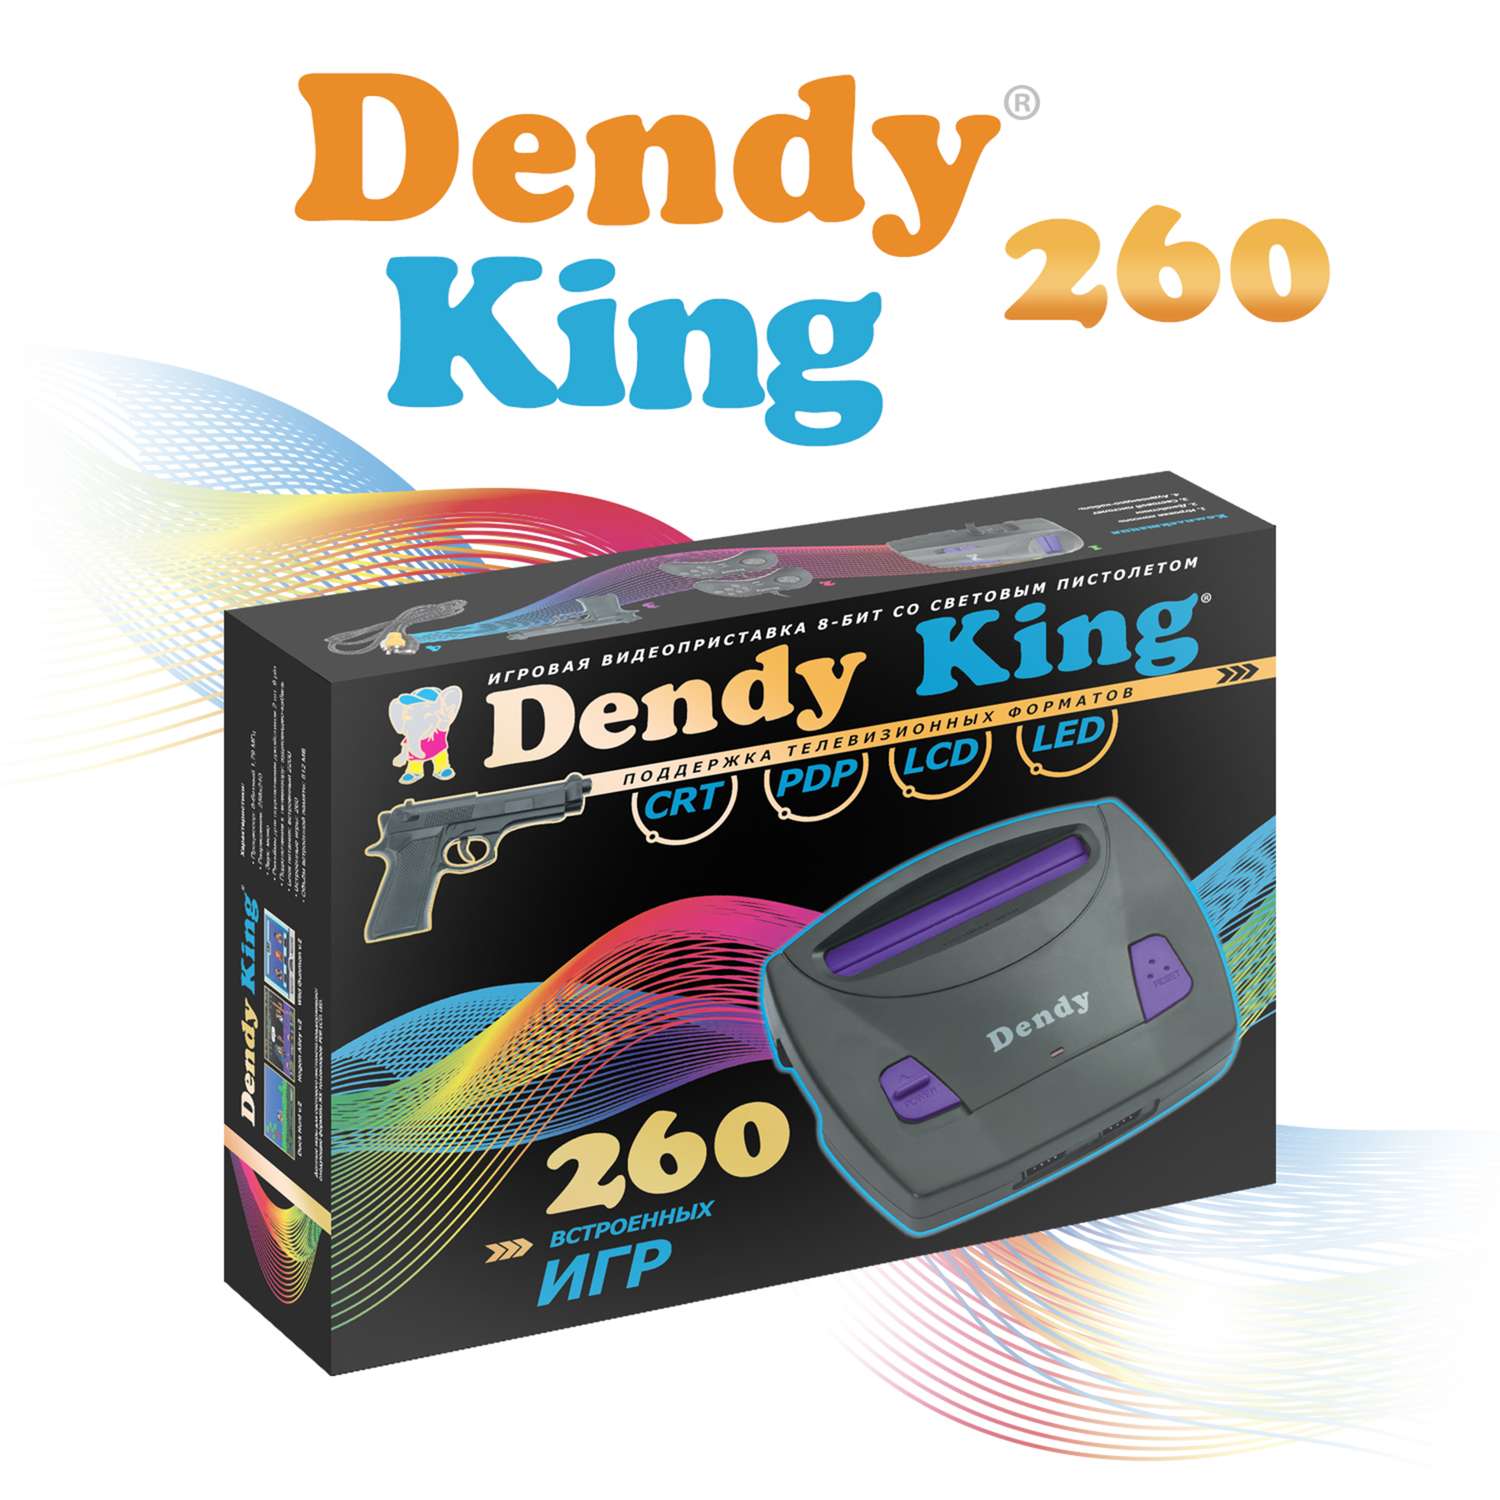 Игровая приставка Dendy King 260 игр (8-бит) со световым пистолетом - фото 1